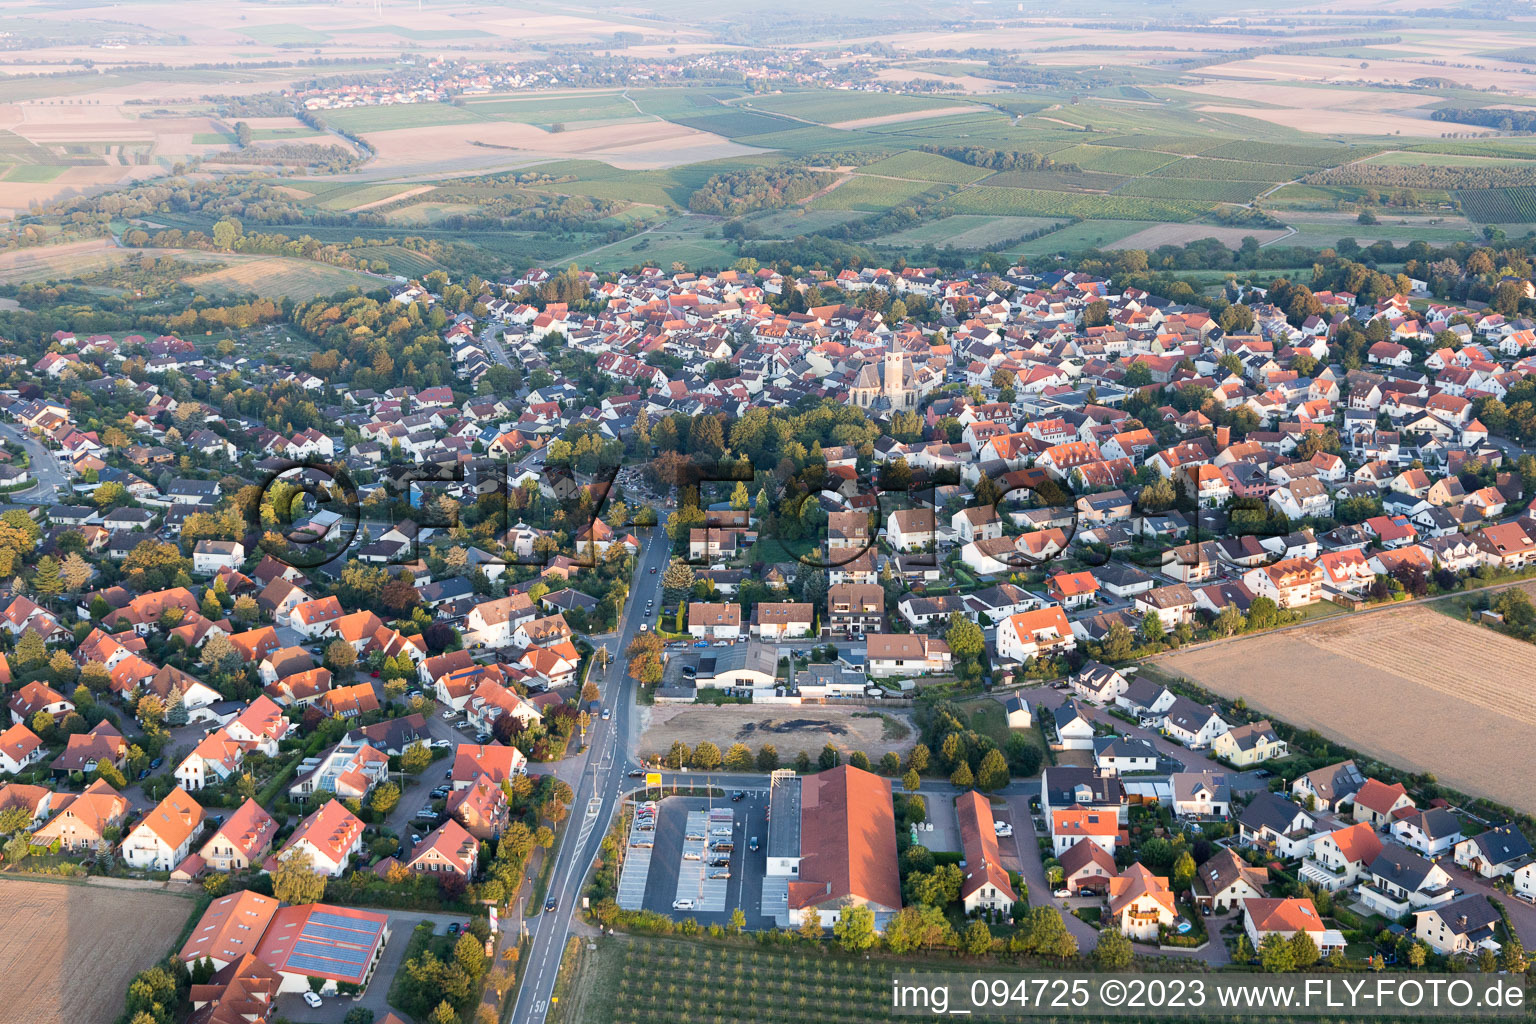 Vue aérienne de Zornheim dans le département Rhénanie-Palatinat, Allemagne